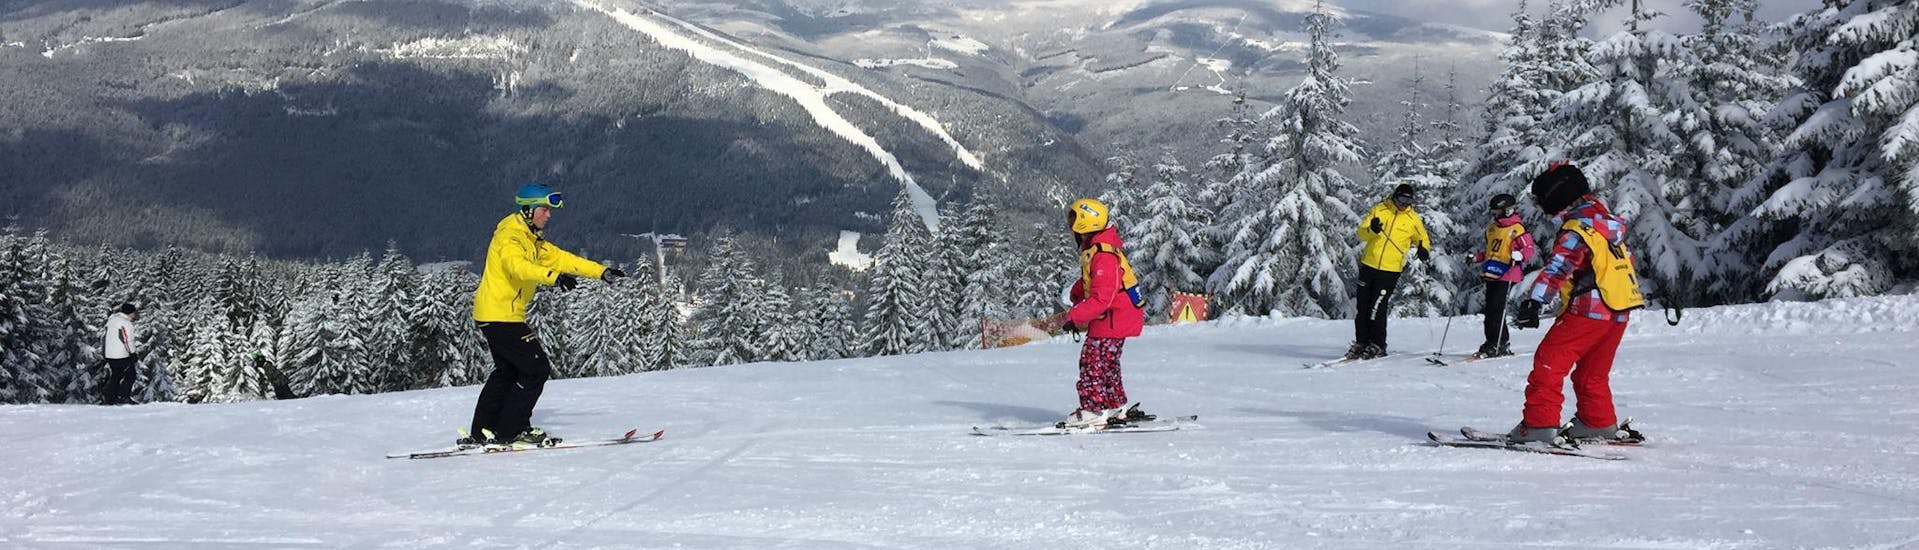 Privater Skikurs für Kinder & Jugendliche aller Altersgruppen.